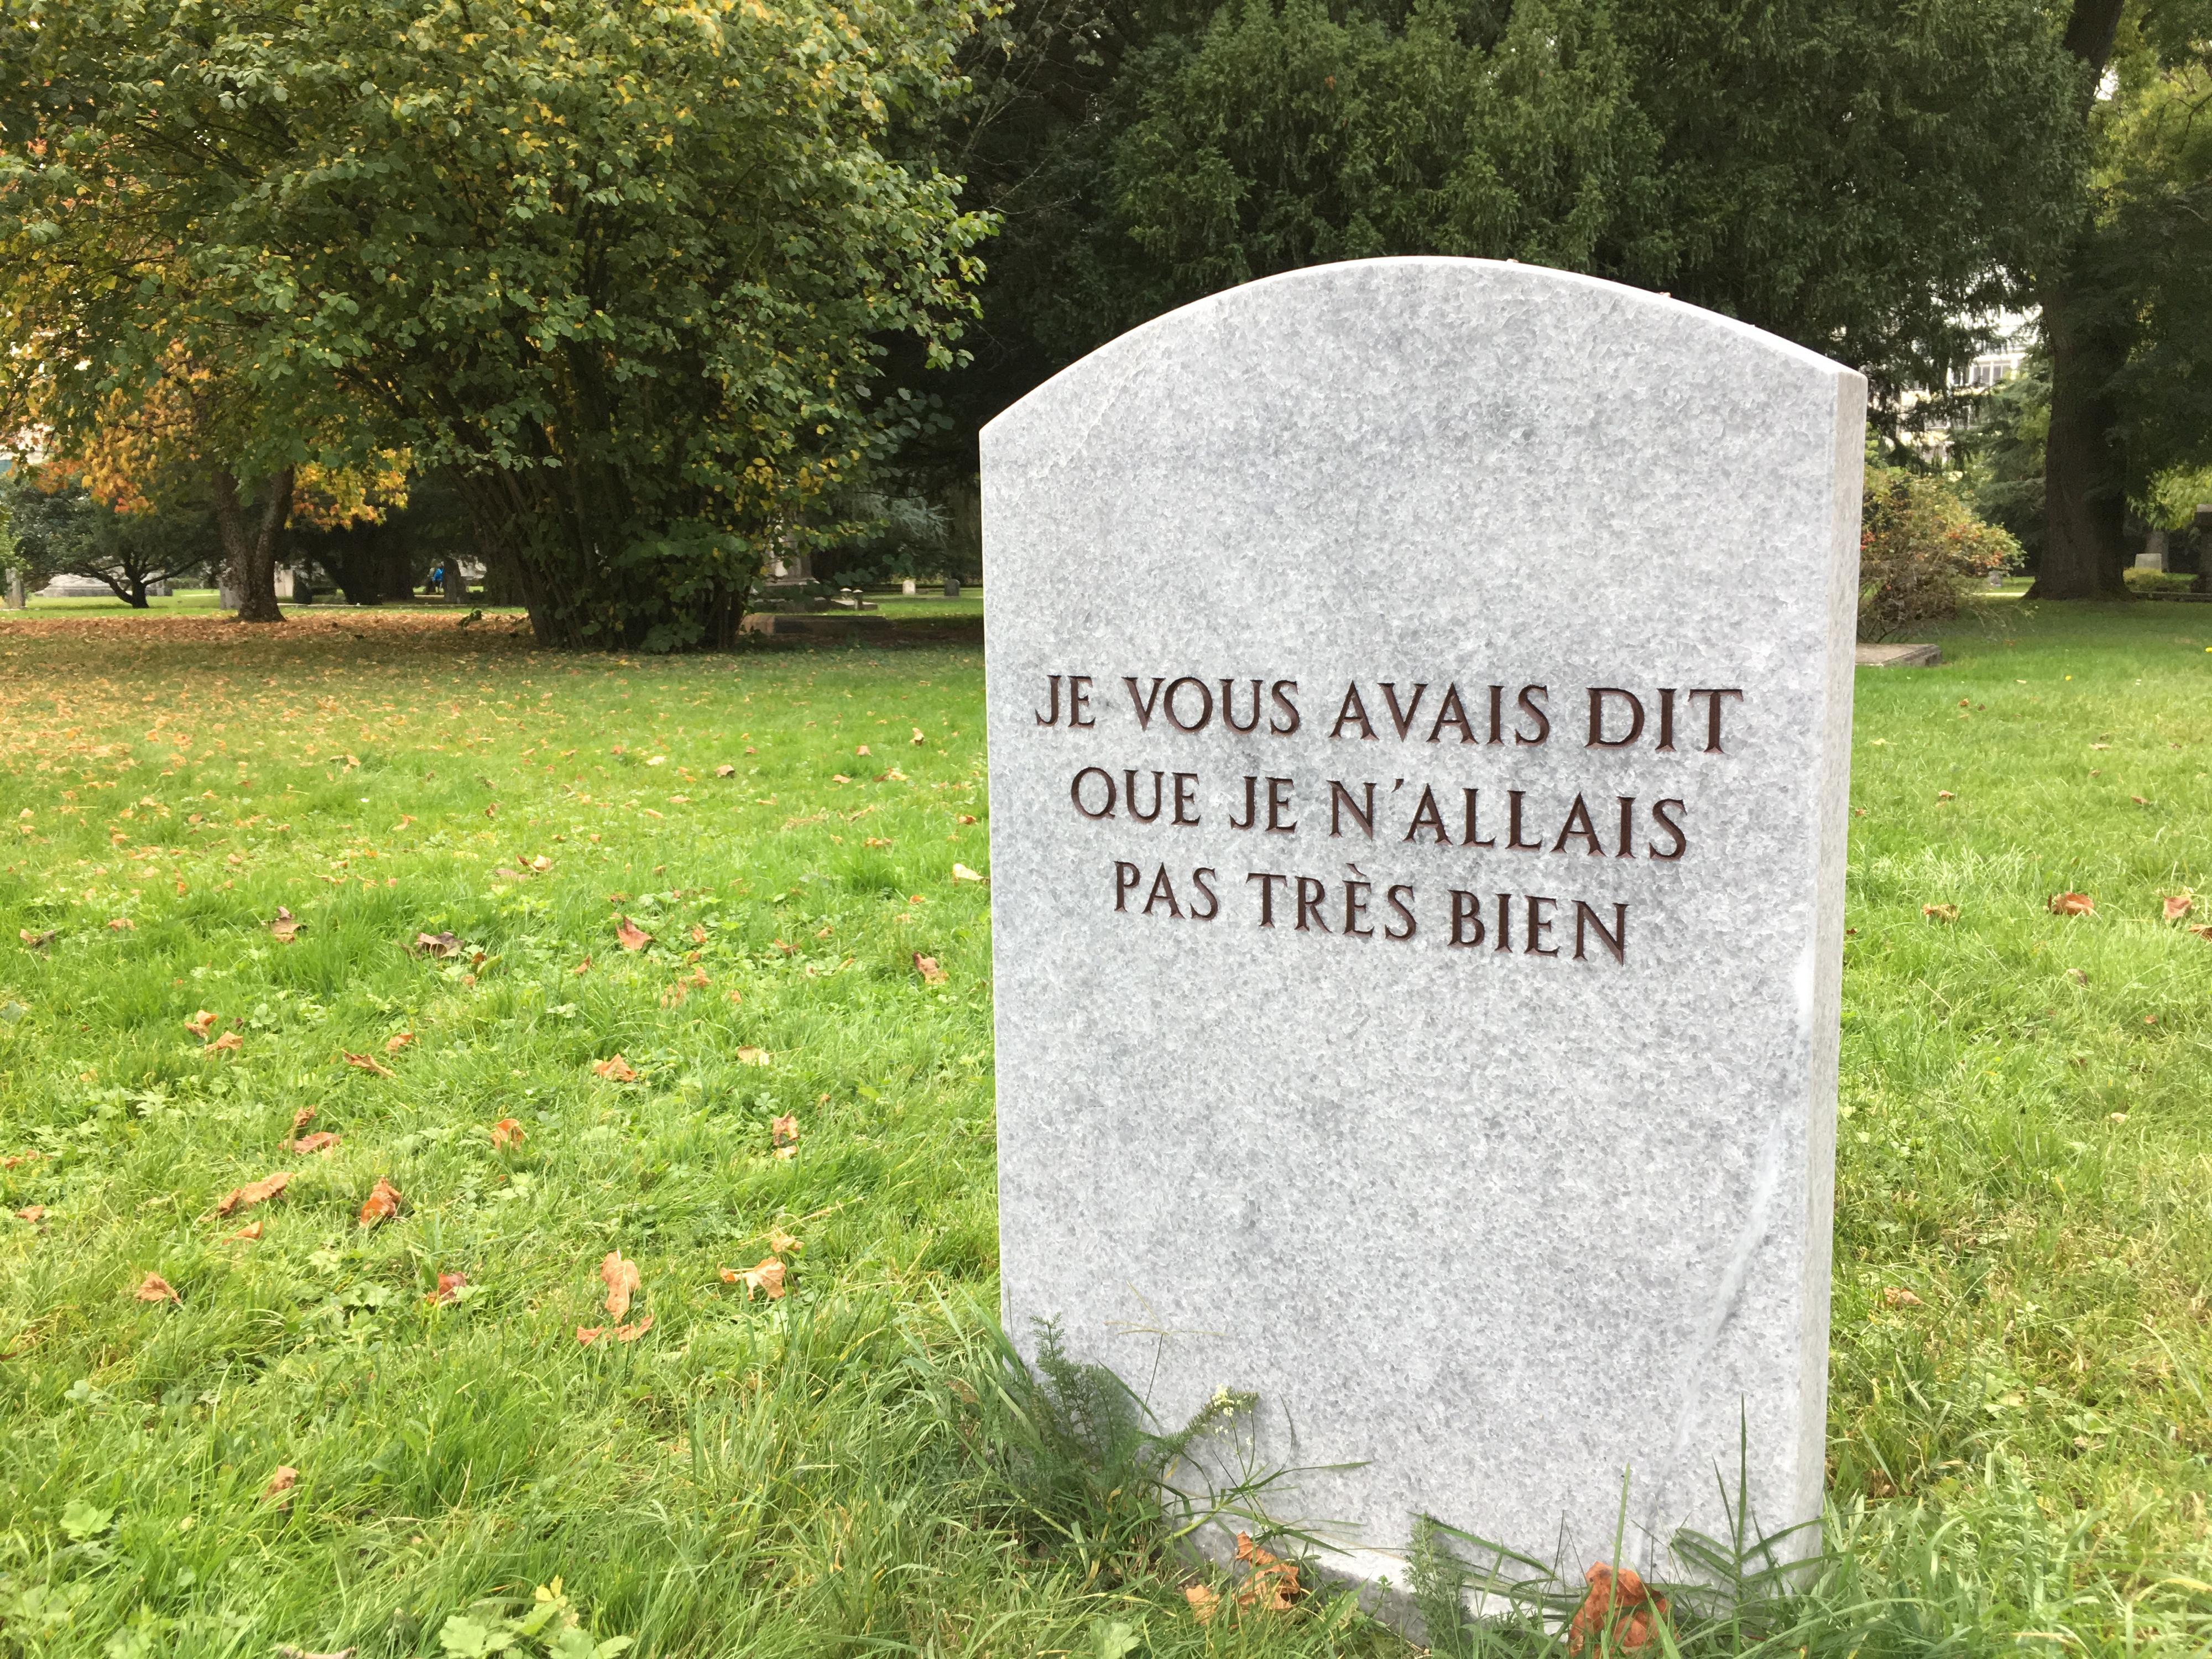 L'oeuvre de Gianni Motti, Je vous avais dit que je n'allais pas très bien (2016), réalisée dans le cadre de l'exposition Open End au cimetière des Rois à Genève. [RTS - Pauline Rappaz]